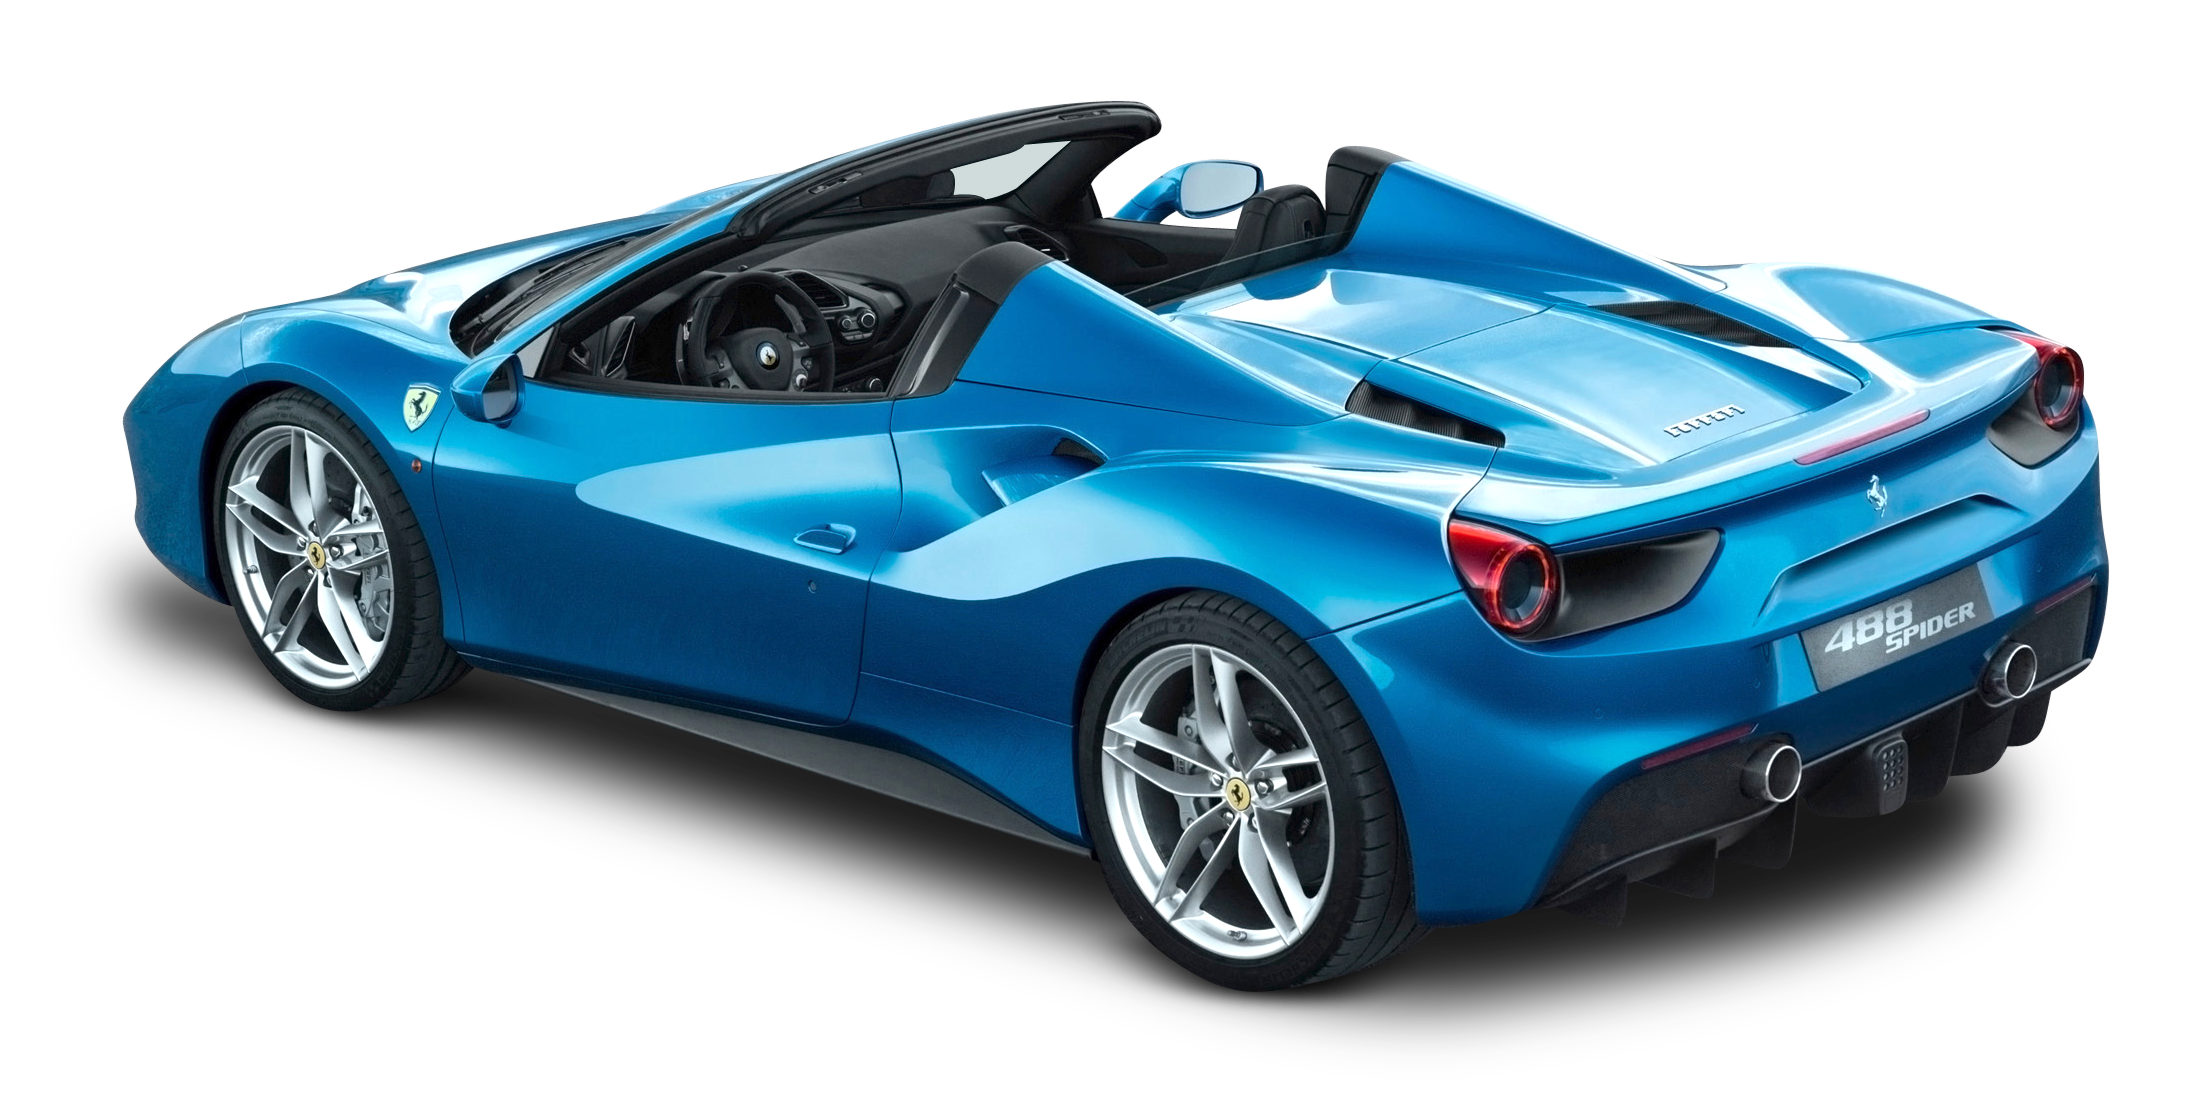 ferrari-488-spider-blue-car-back-png-image-for-free-download